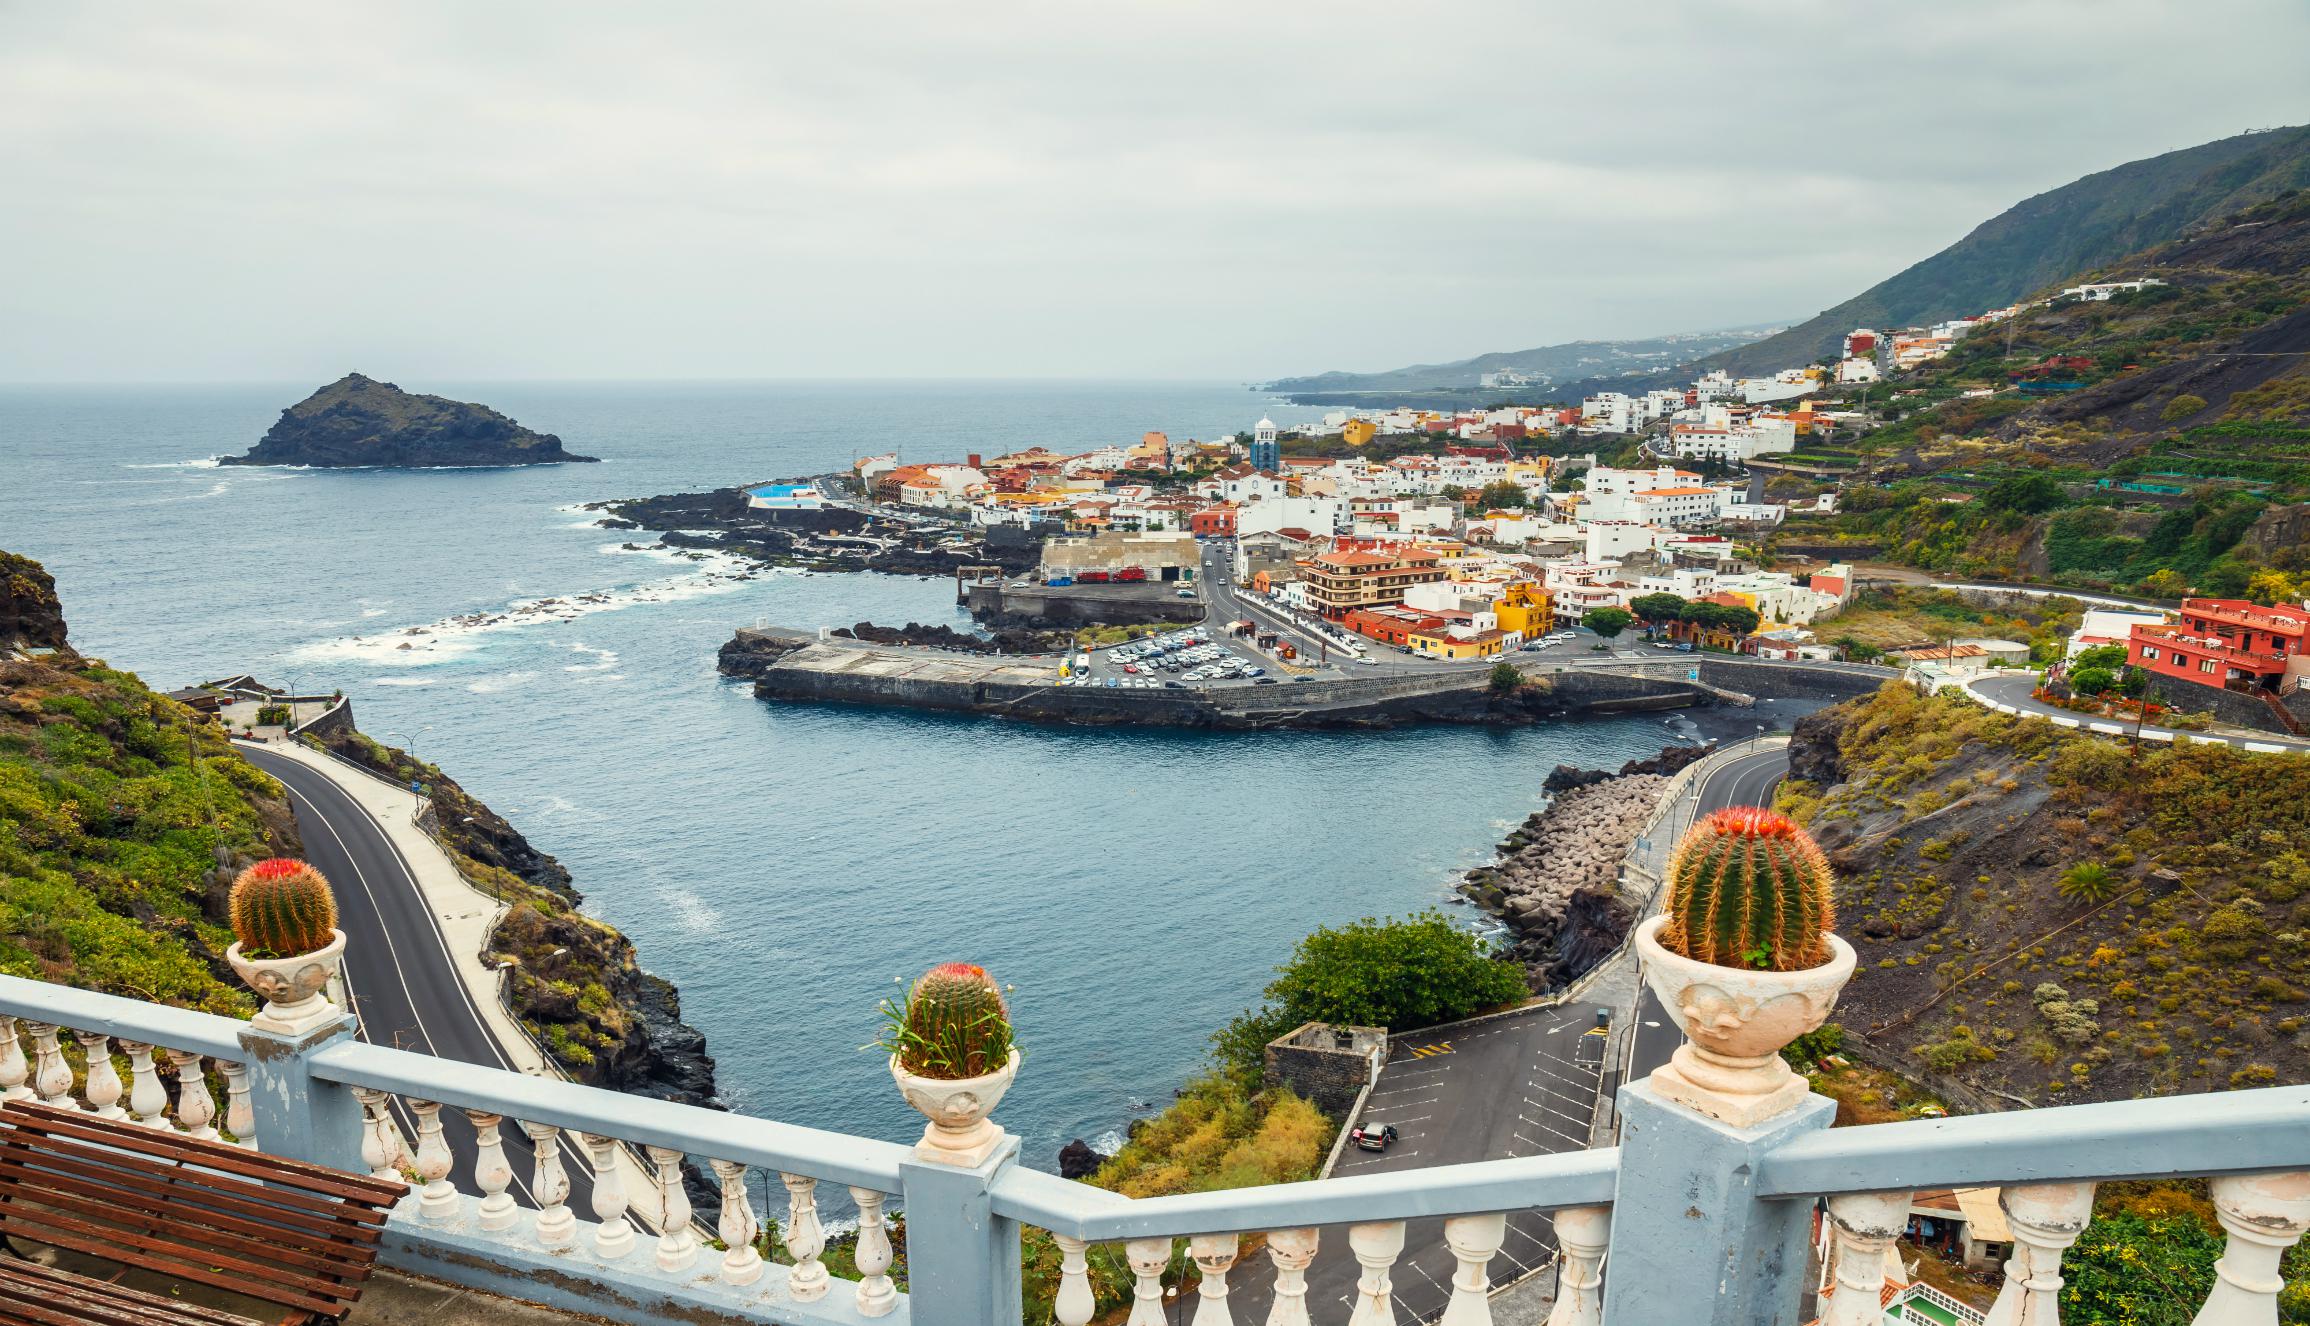 Los miradores y el casco histórico del municipio de Garachico, declarado Bien de Interés Cultural desde 1994, destacan en la isla de Tenerife. (Foto: Shutterstock).